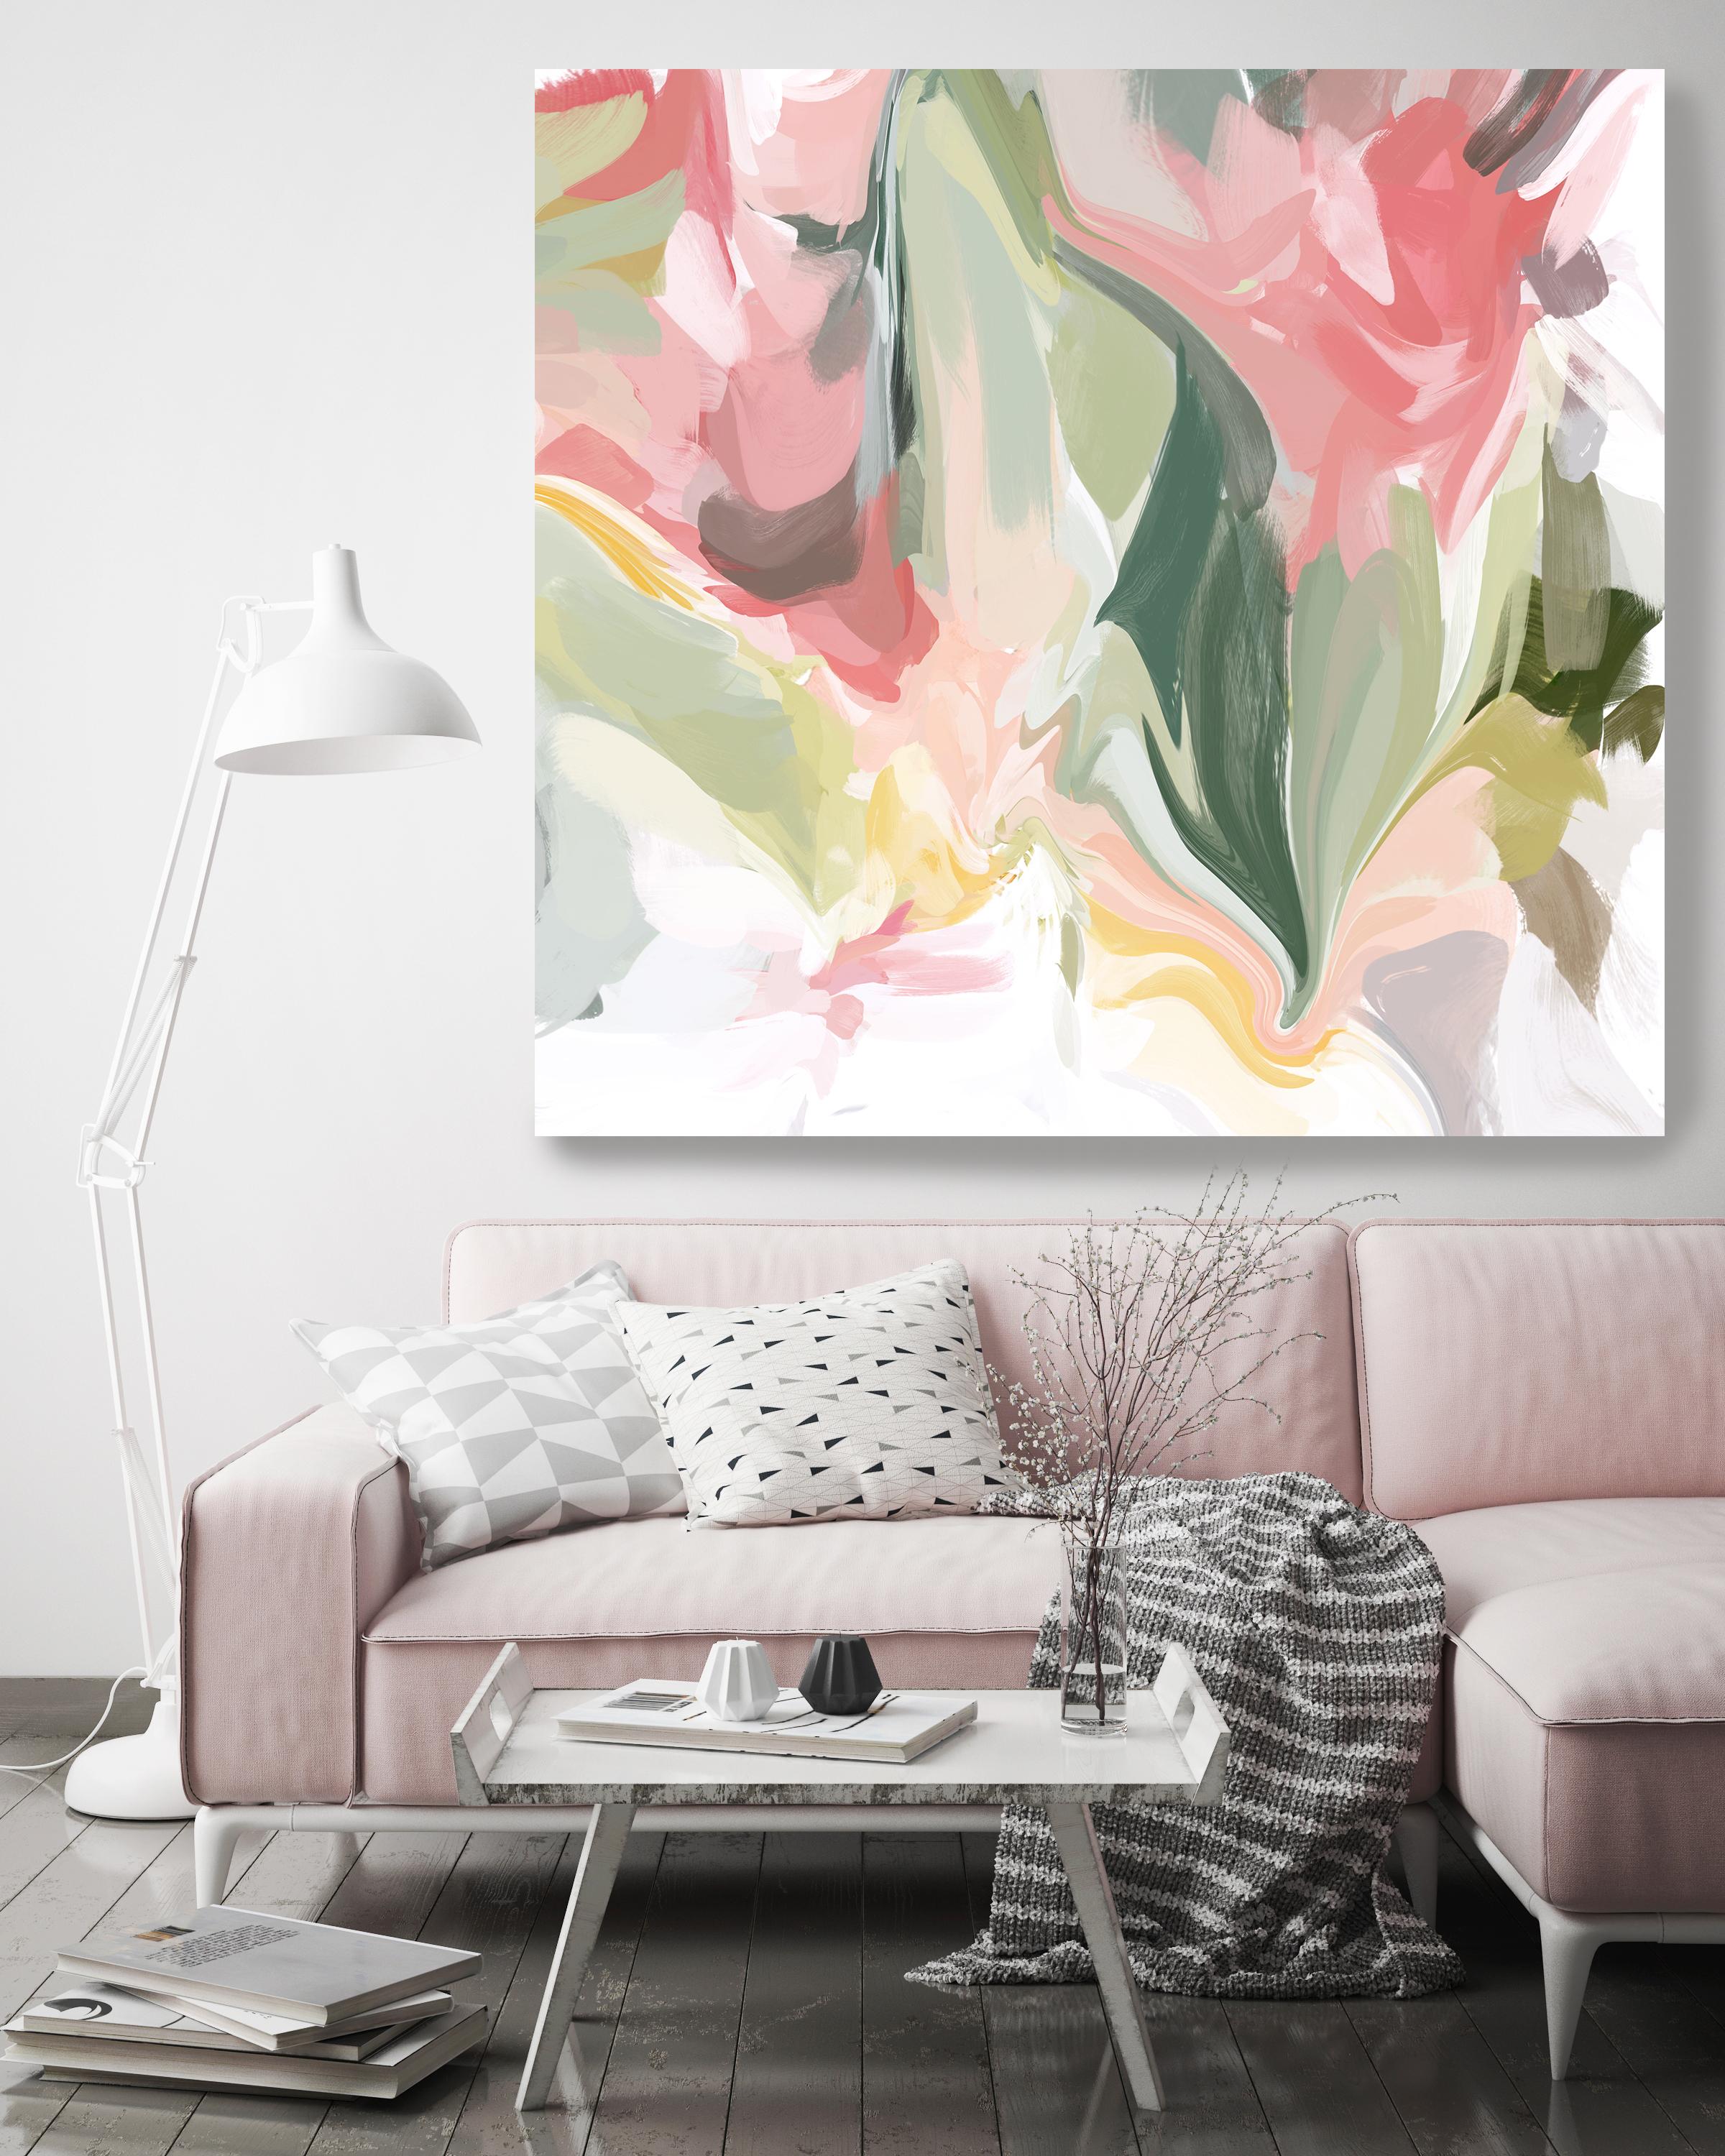 Peinture abstraite verte et rose sur toile technique mixte, 45x45" On the Move - Mixed Media Art de Irena Orlov